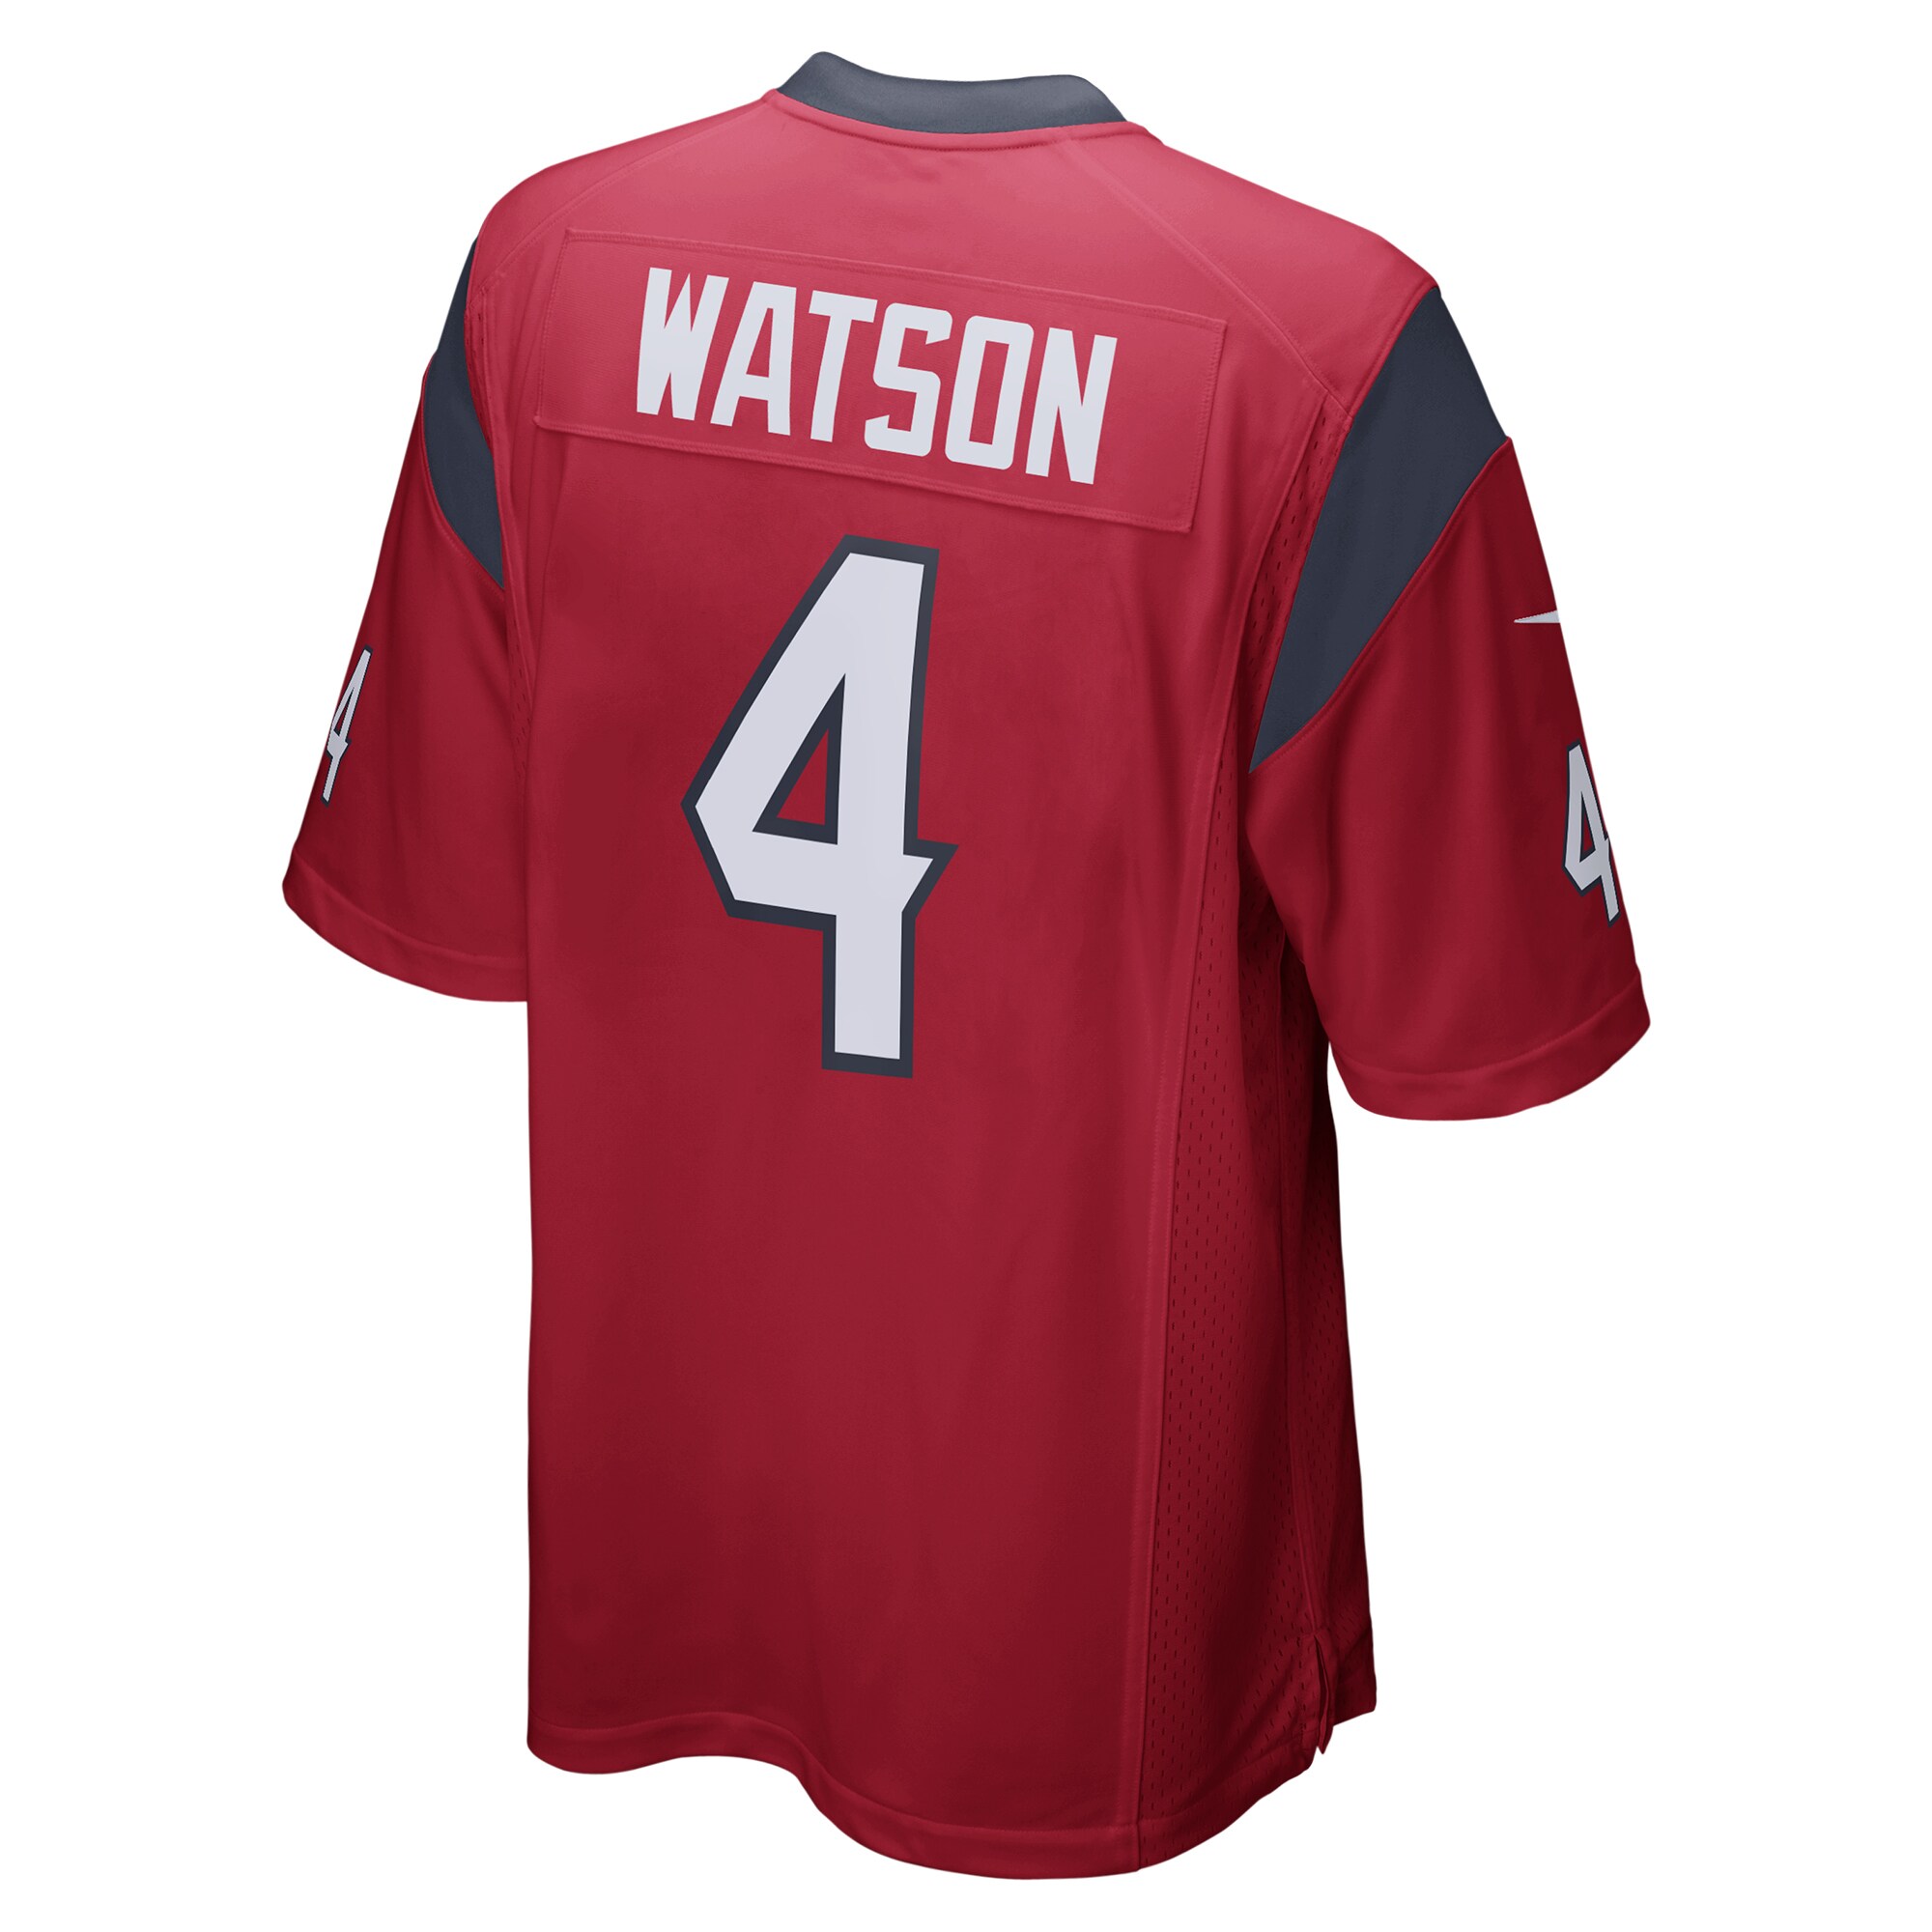 Men's Houston Texans Deshaun Watson Nike Red Game Jersey